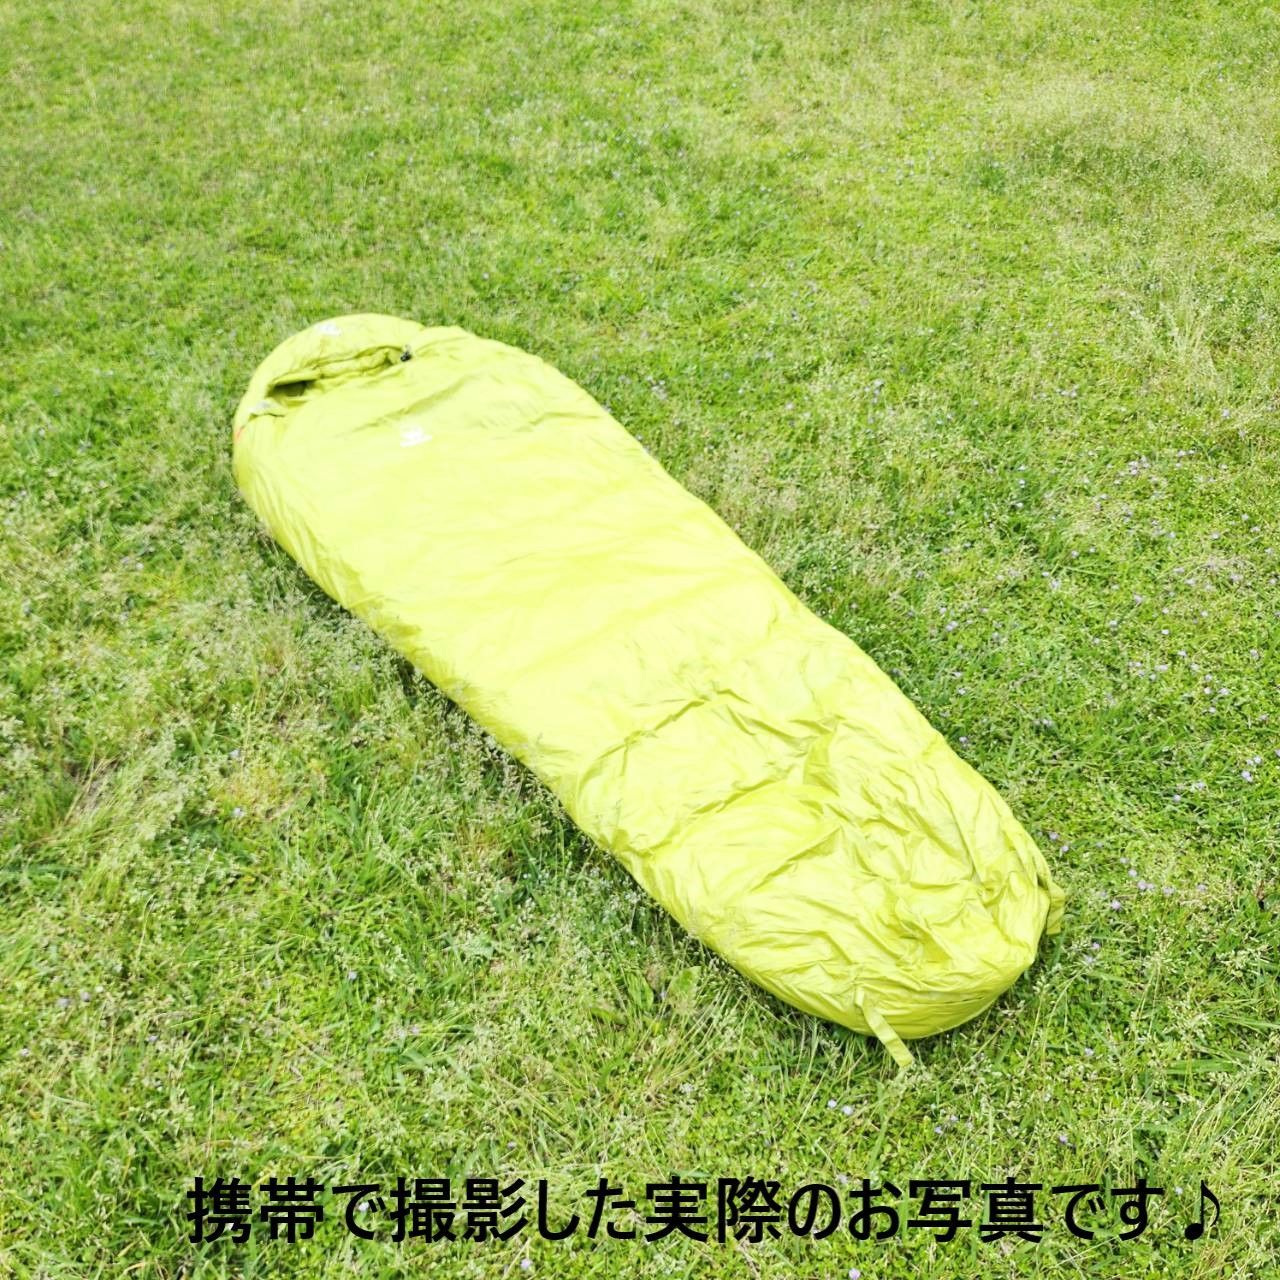 マミー★必需品★ 寝袋 シュラフ 防水 グース ダウン マミー型 ブルー 1000g